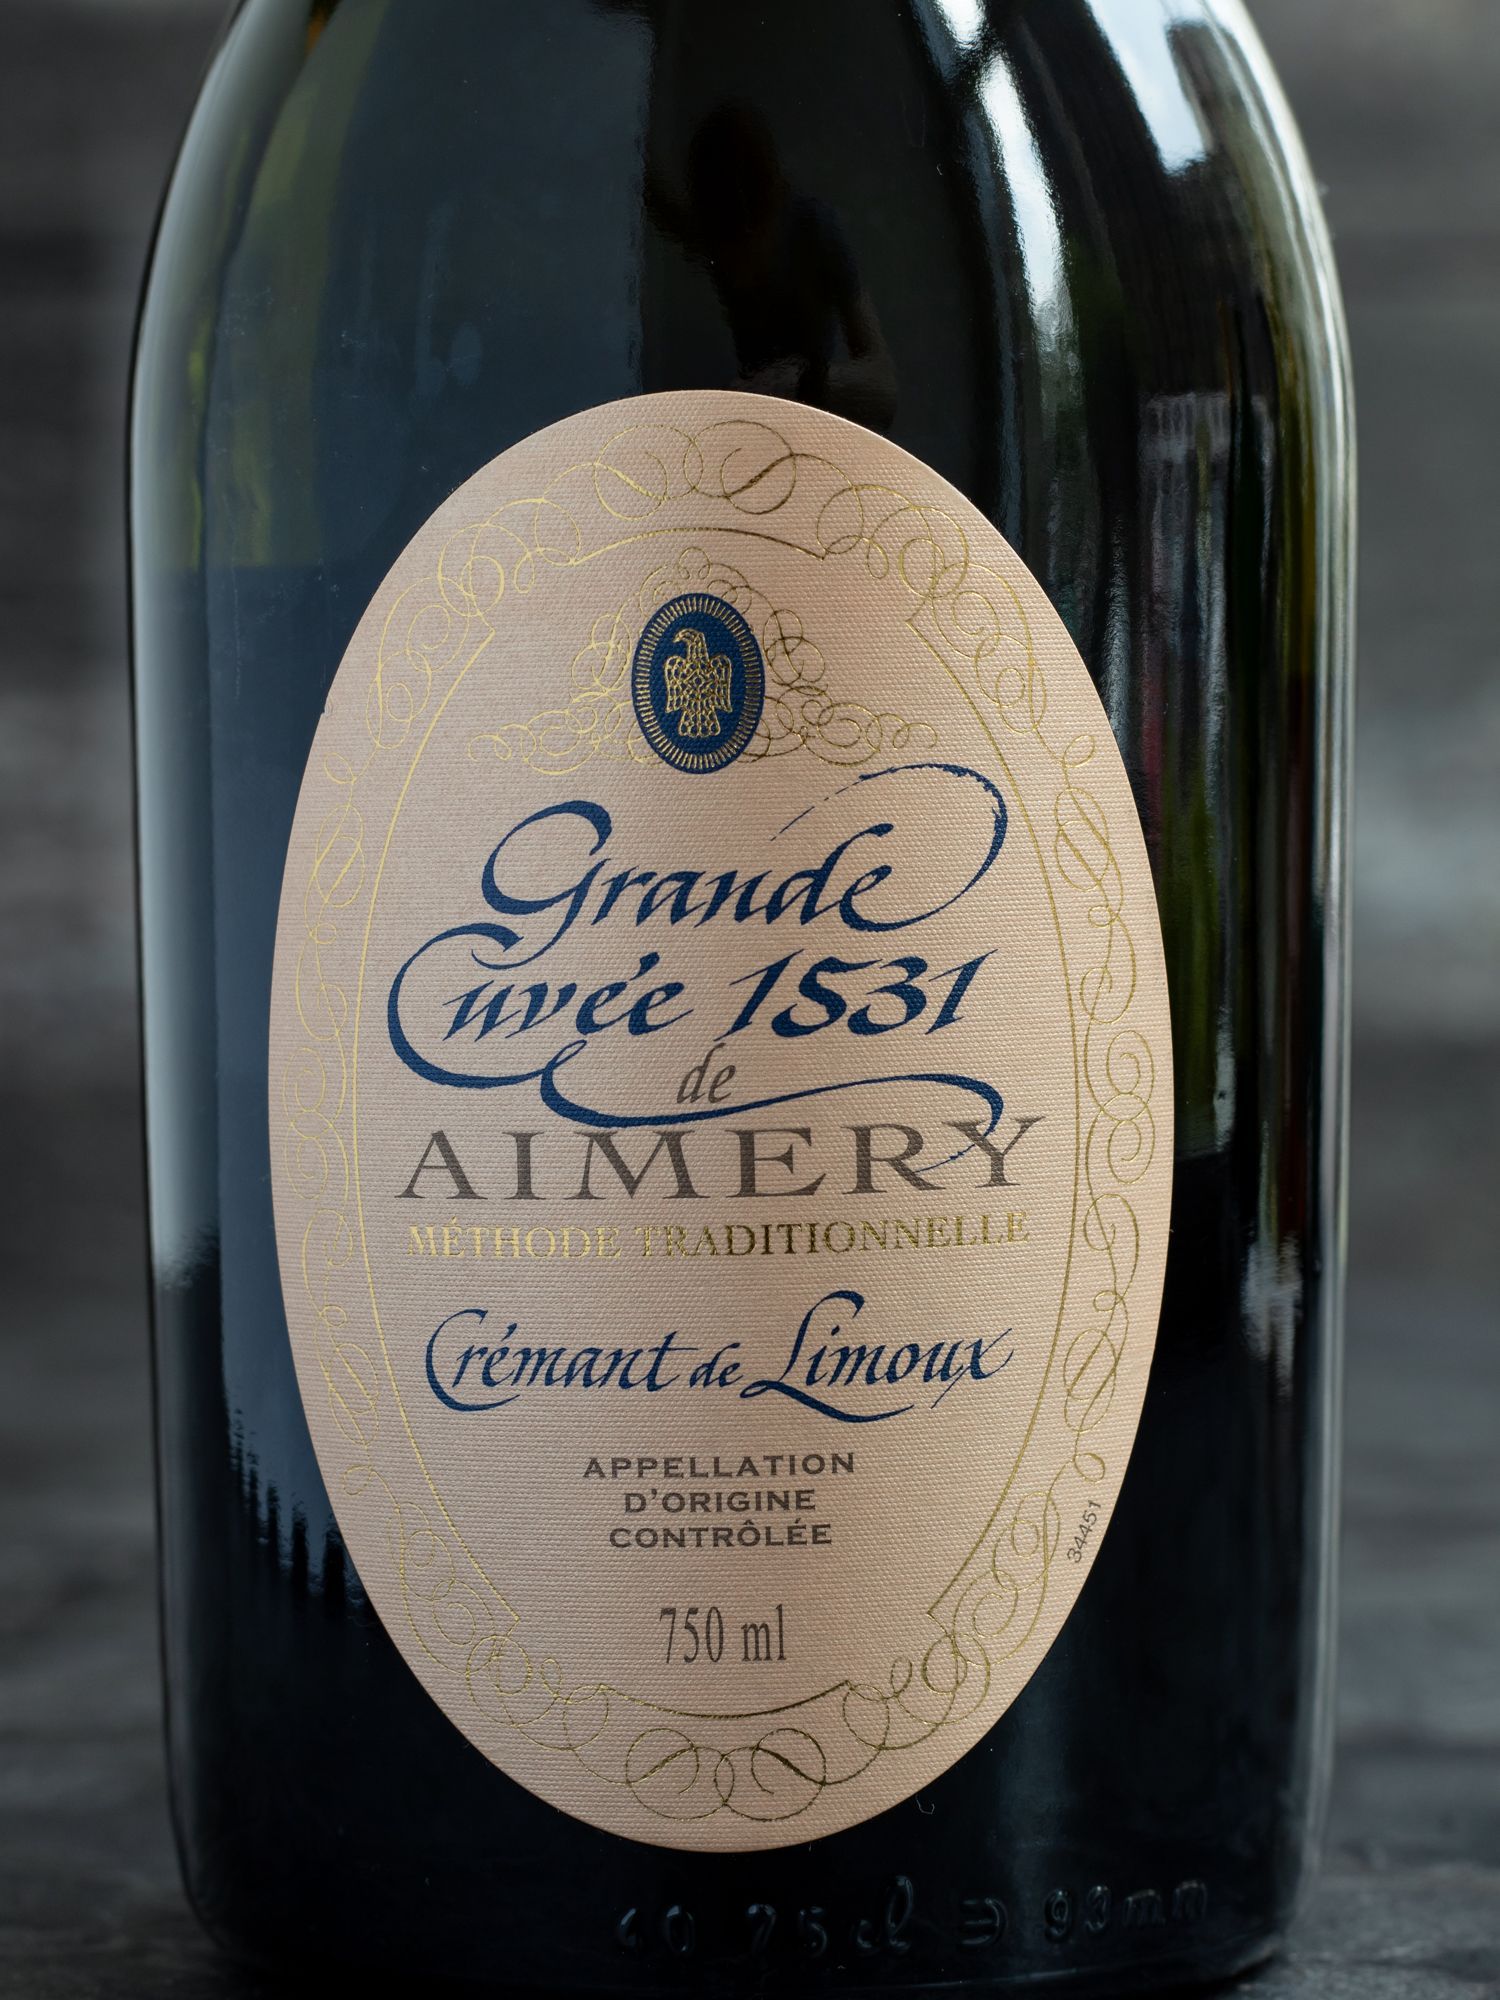 Игристое вино Grande Cuvee 1531 de Aimery Cremant de Limoux Rose / Гранд Кюве 1531 де Эмери Креман де Лиму Роз